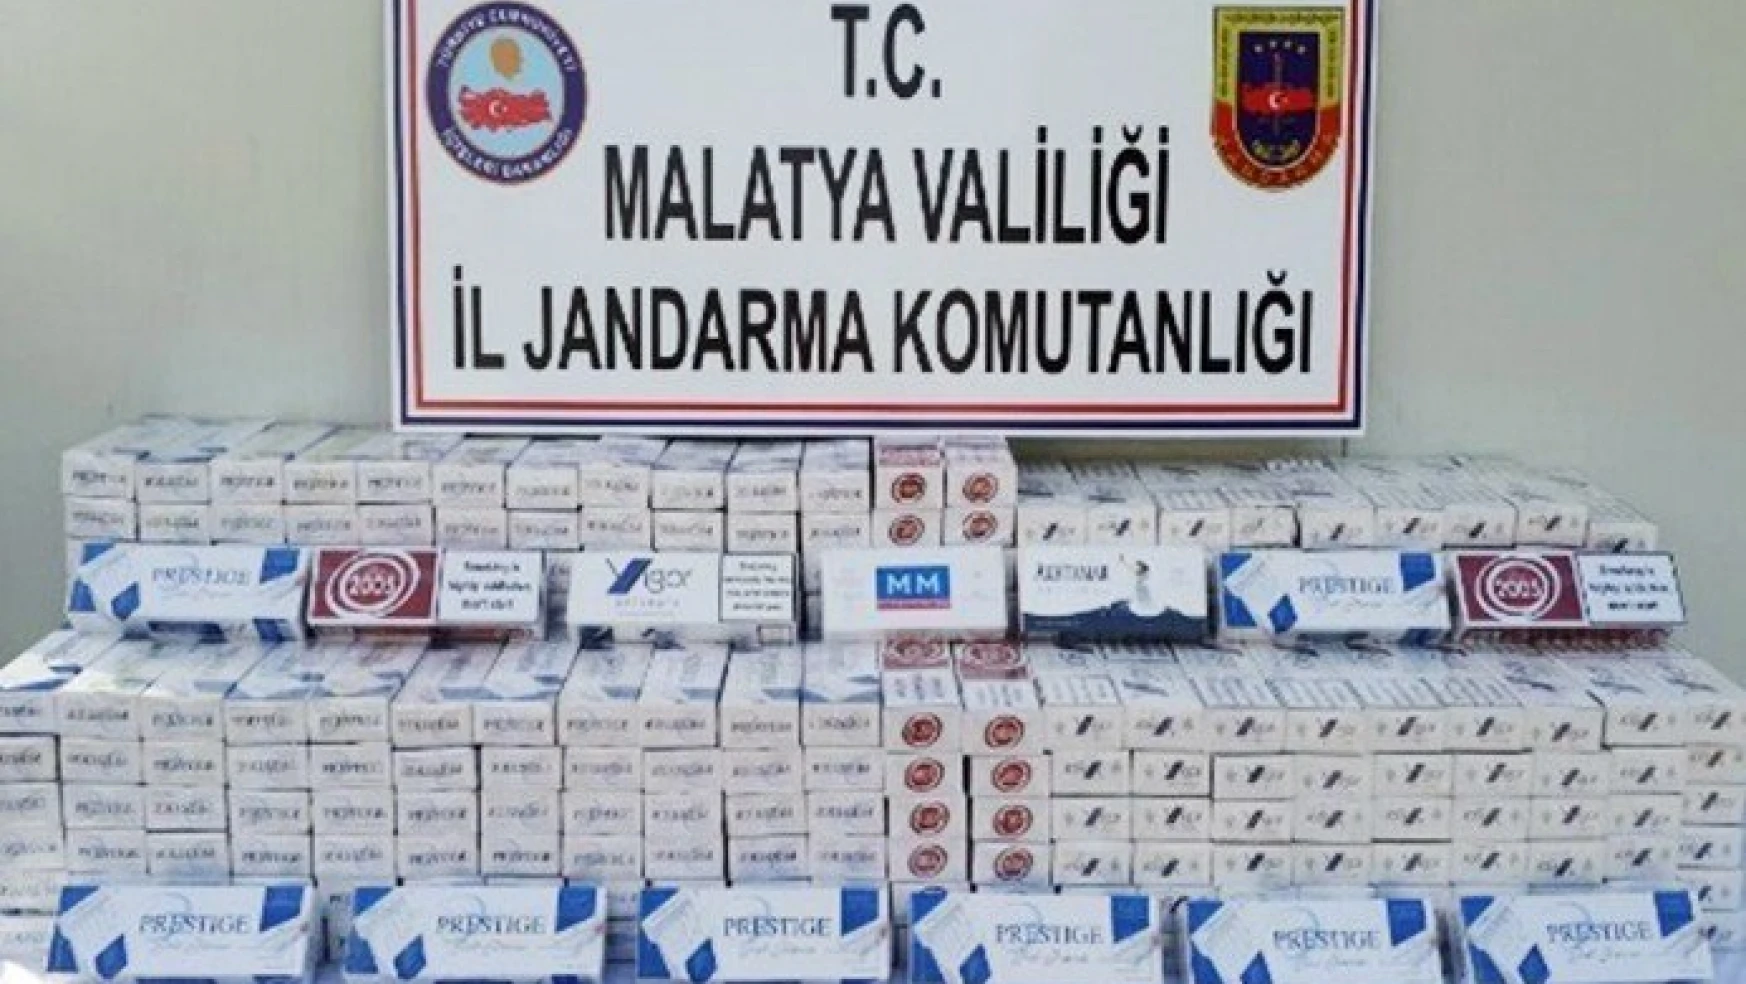 Jandarma 5 bin paket kaçak sigara ele geçirdi
